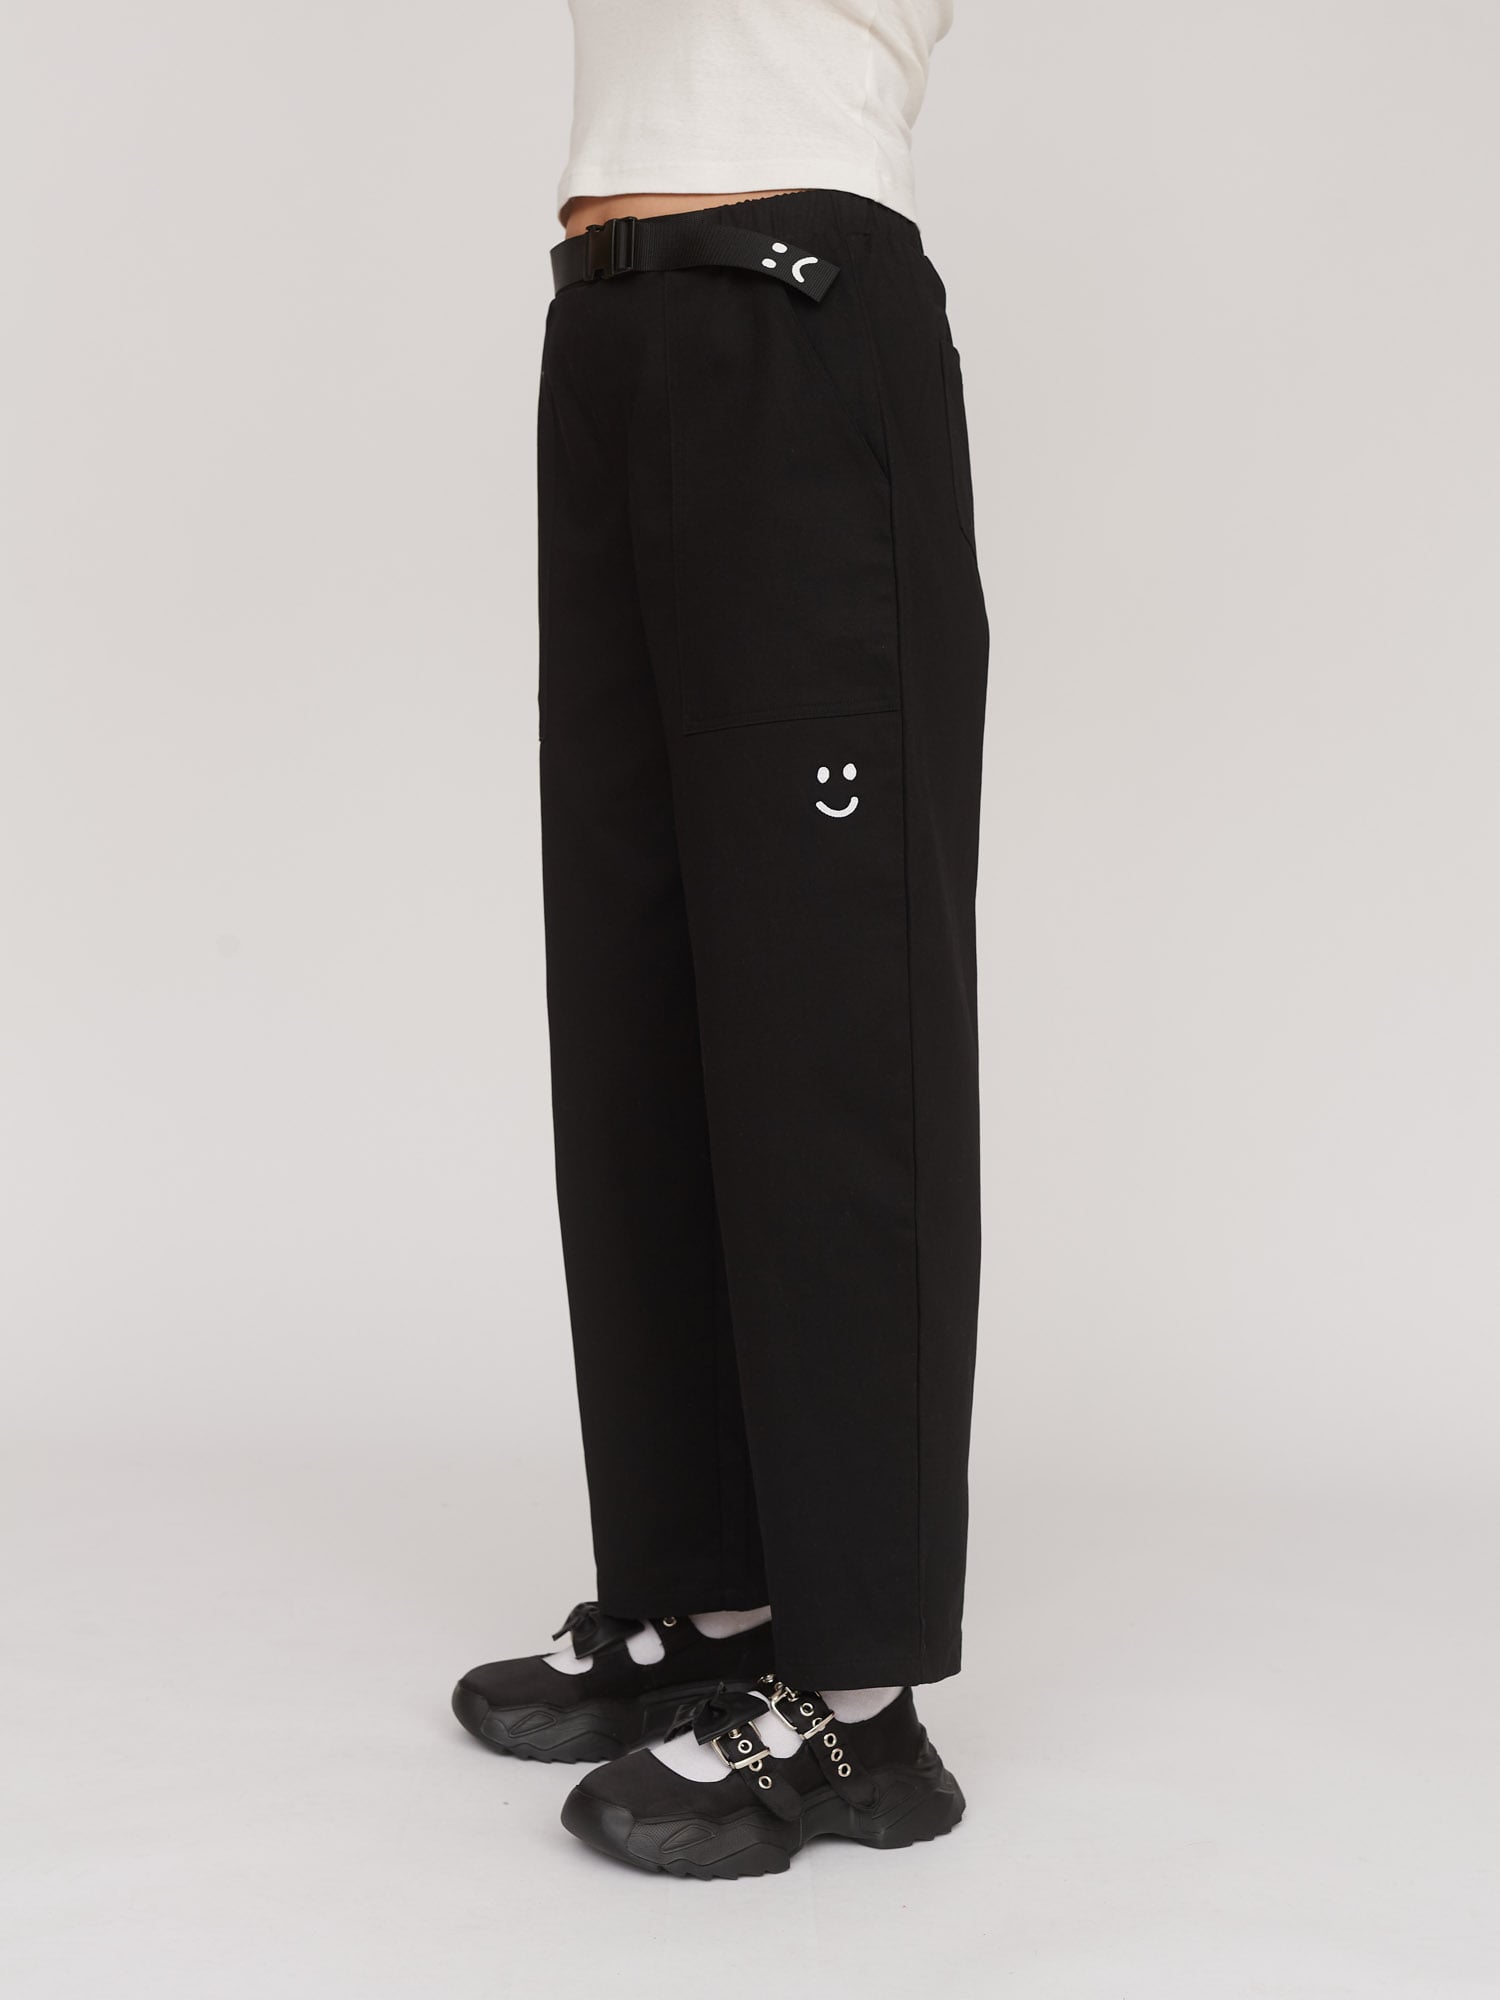 Unisex Trousers| Trousers For Women & Men | Lazy Oaf